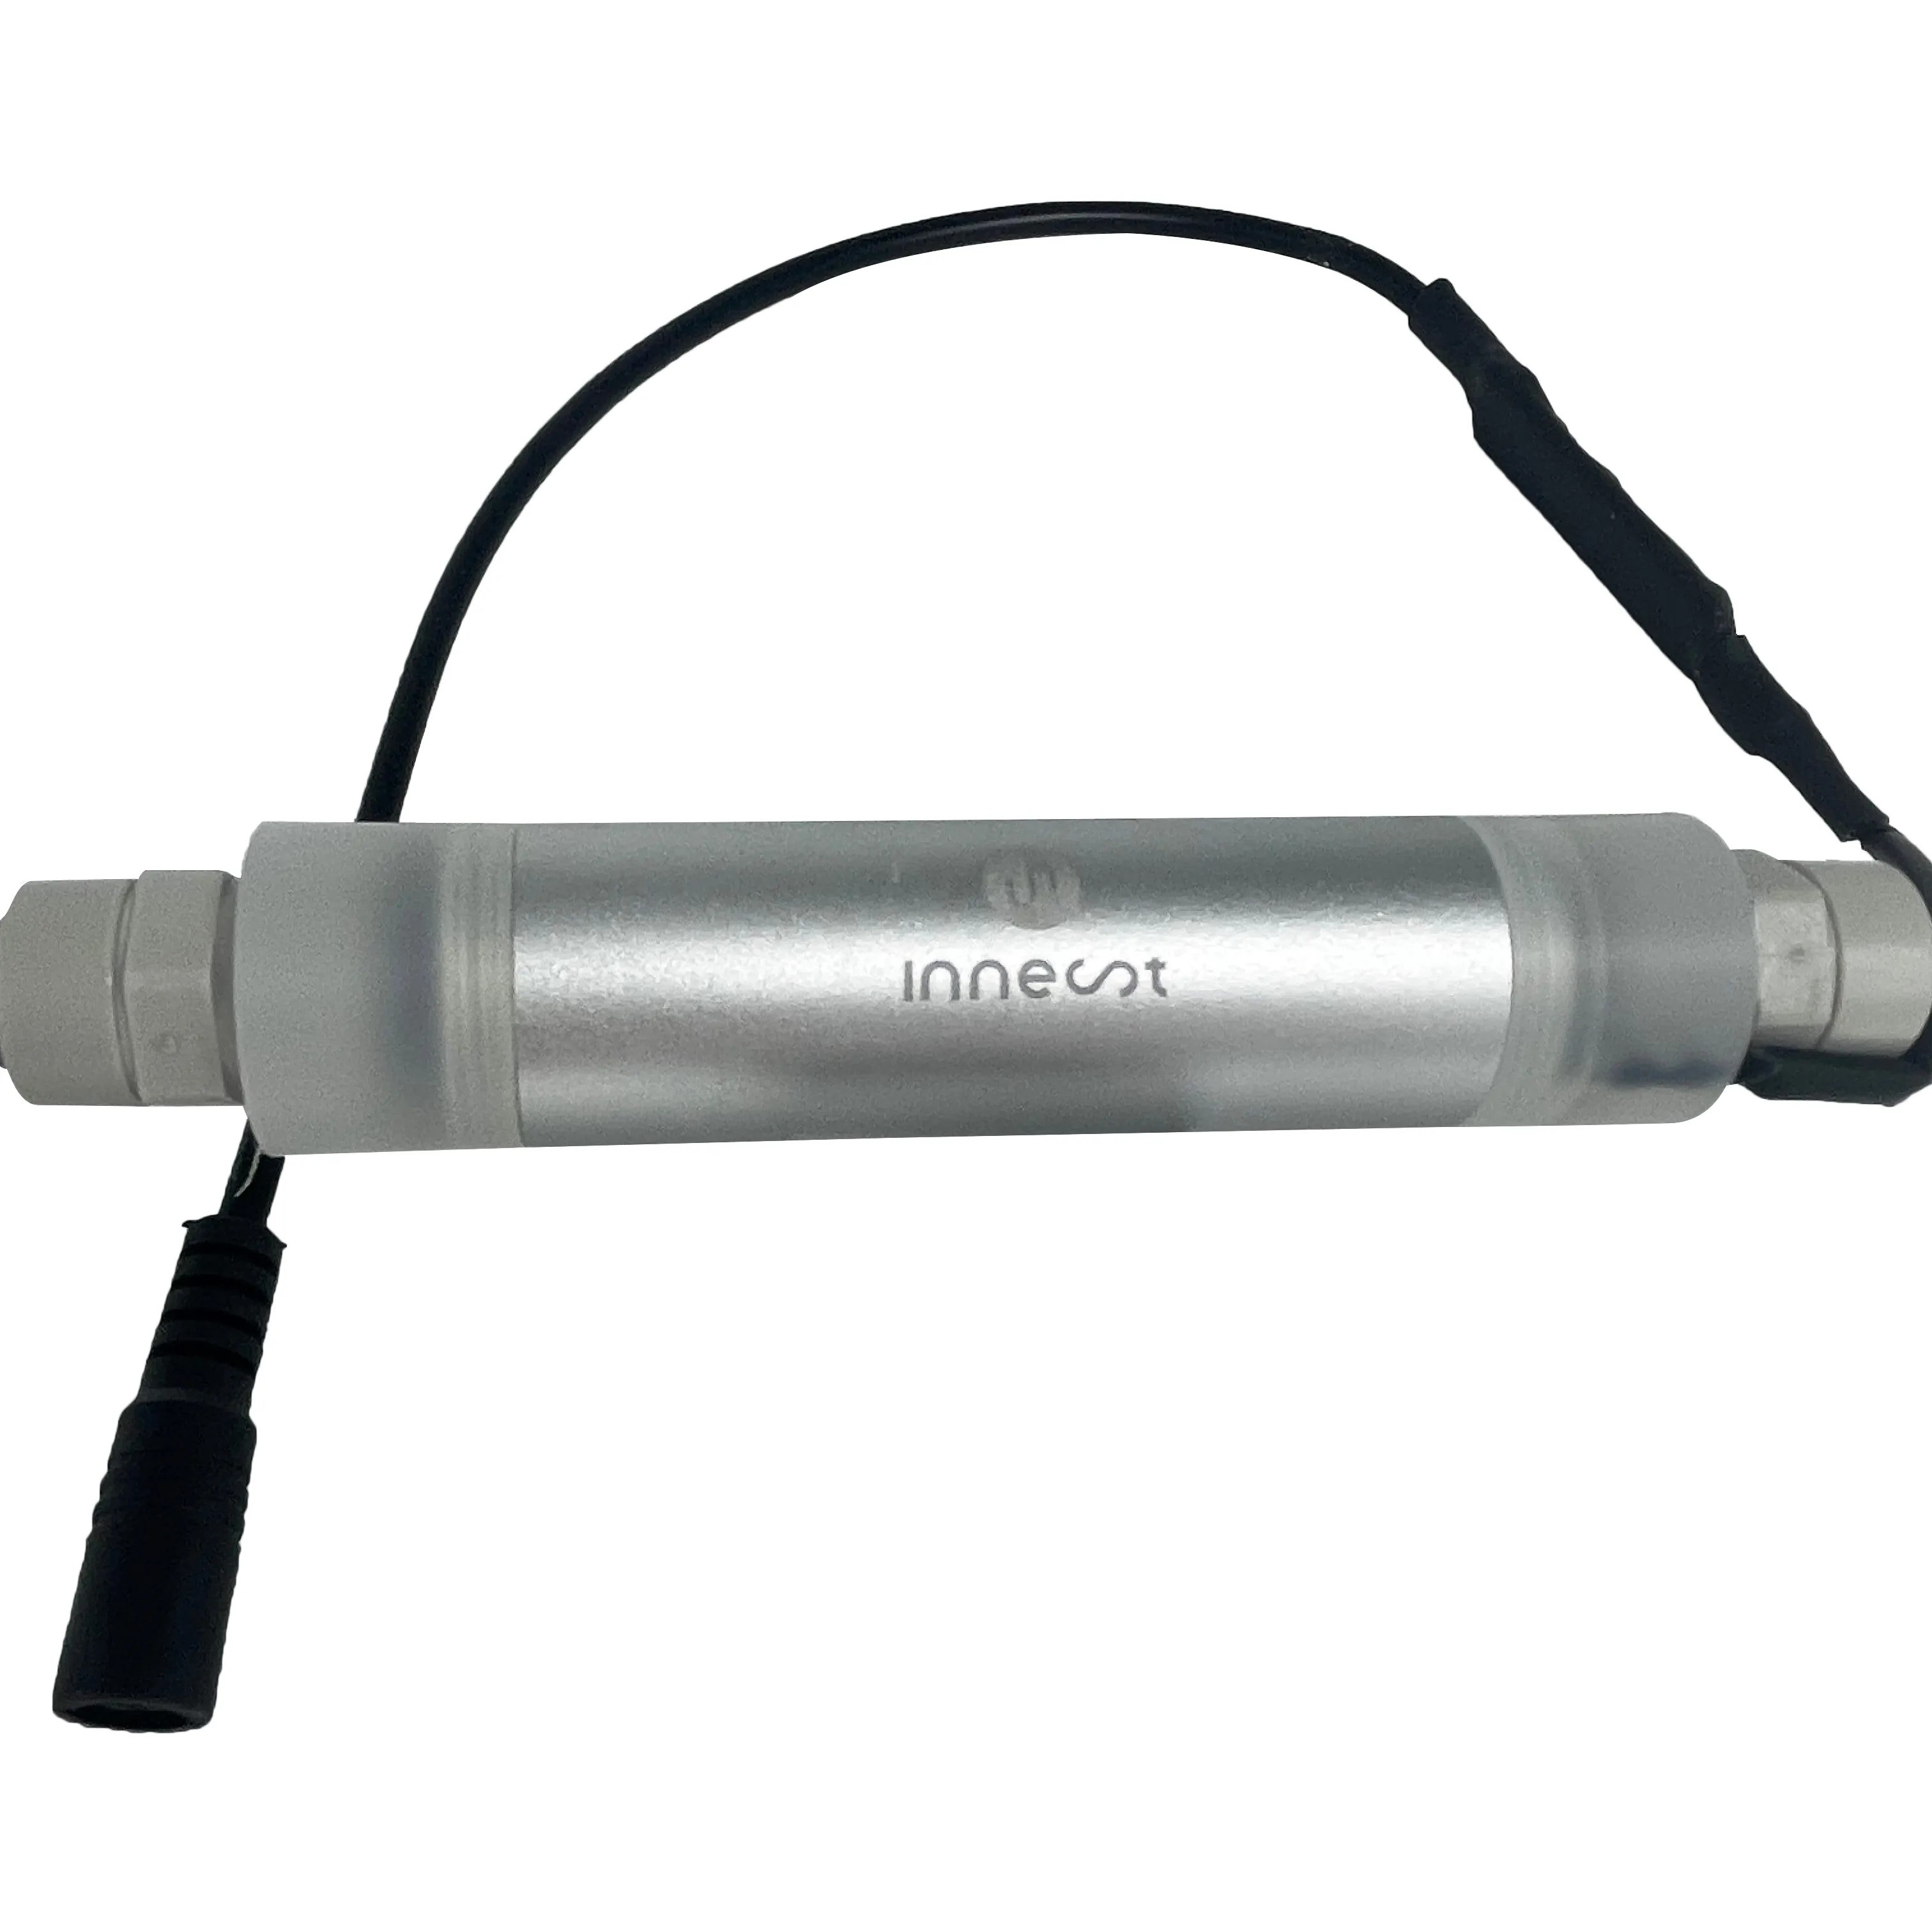 UVC LED alat sterilisasi air rumah tangga, pemurni air disinfeksi untuk air minum